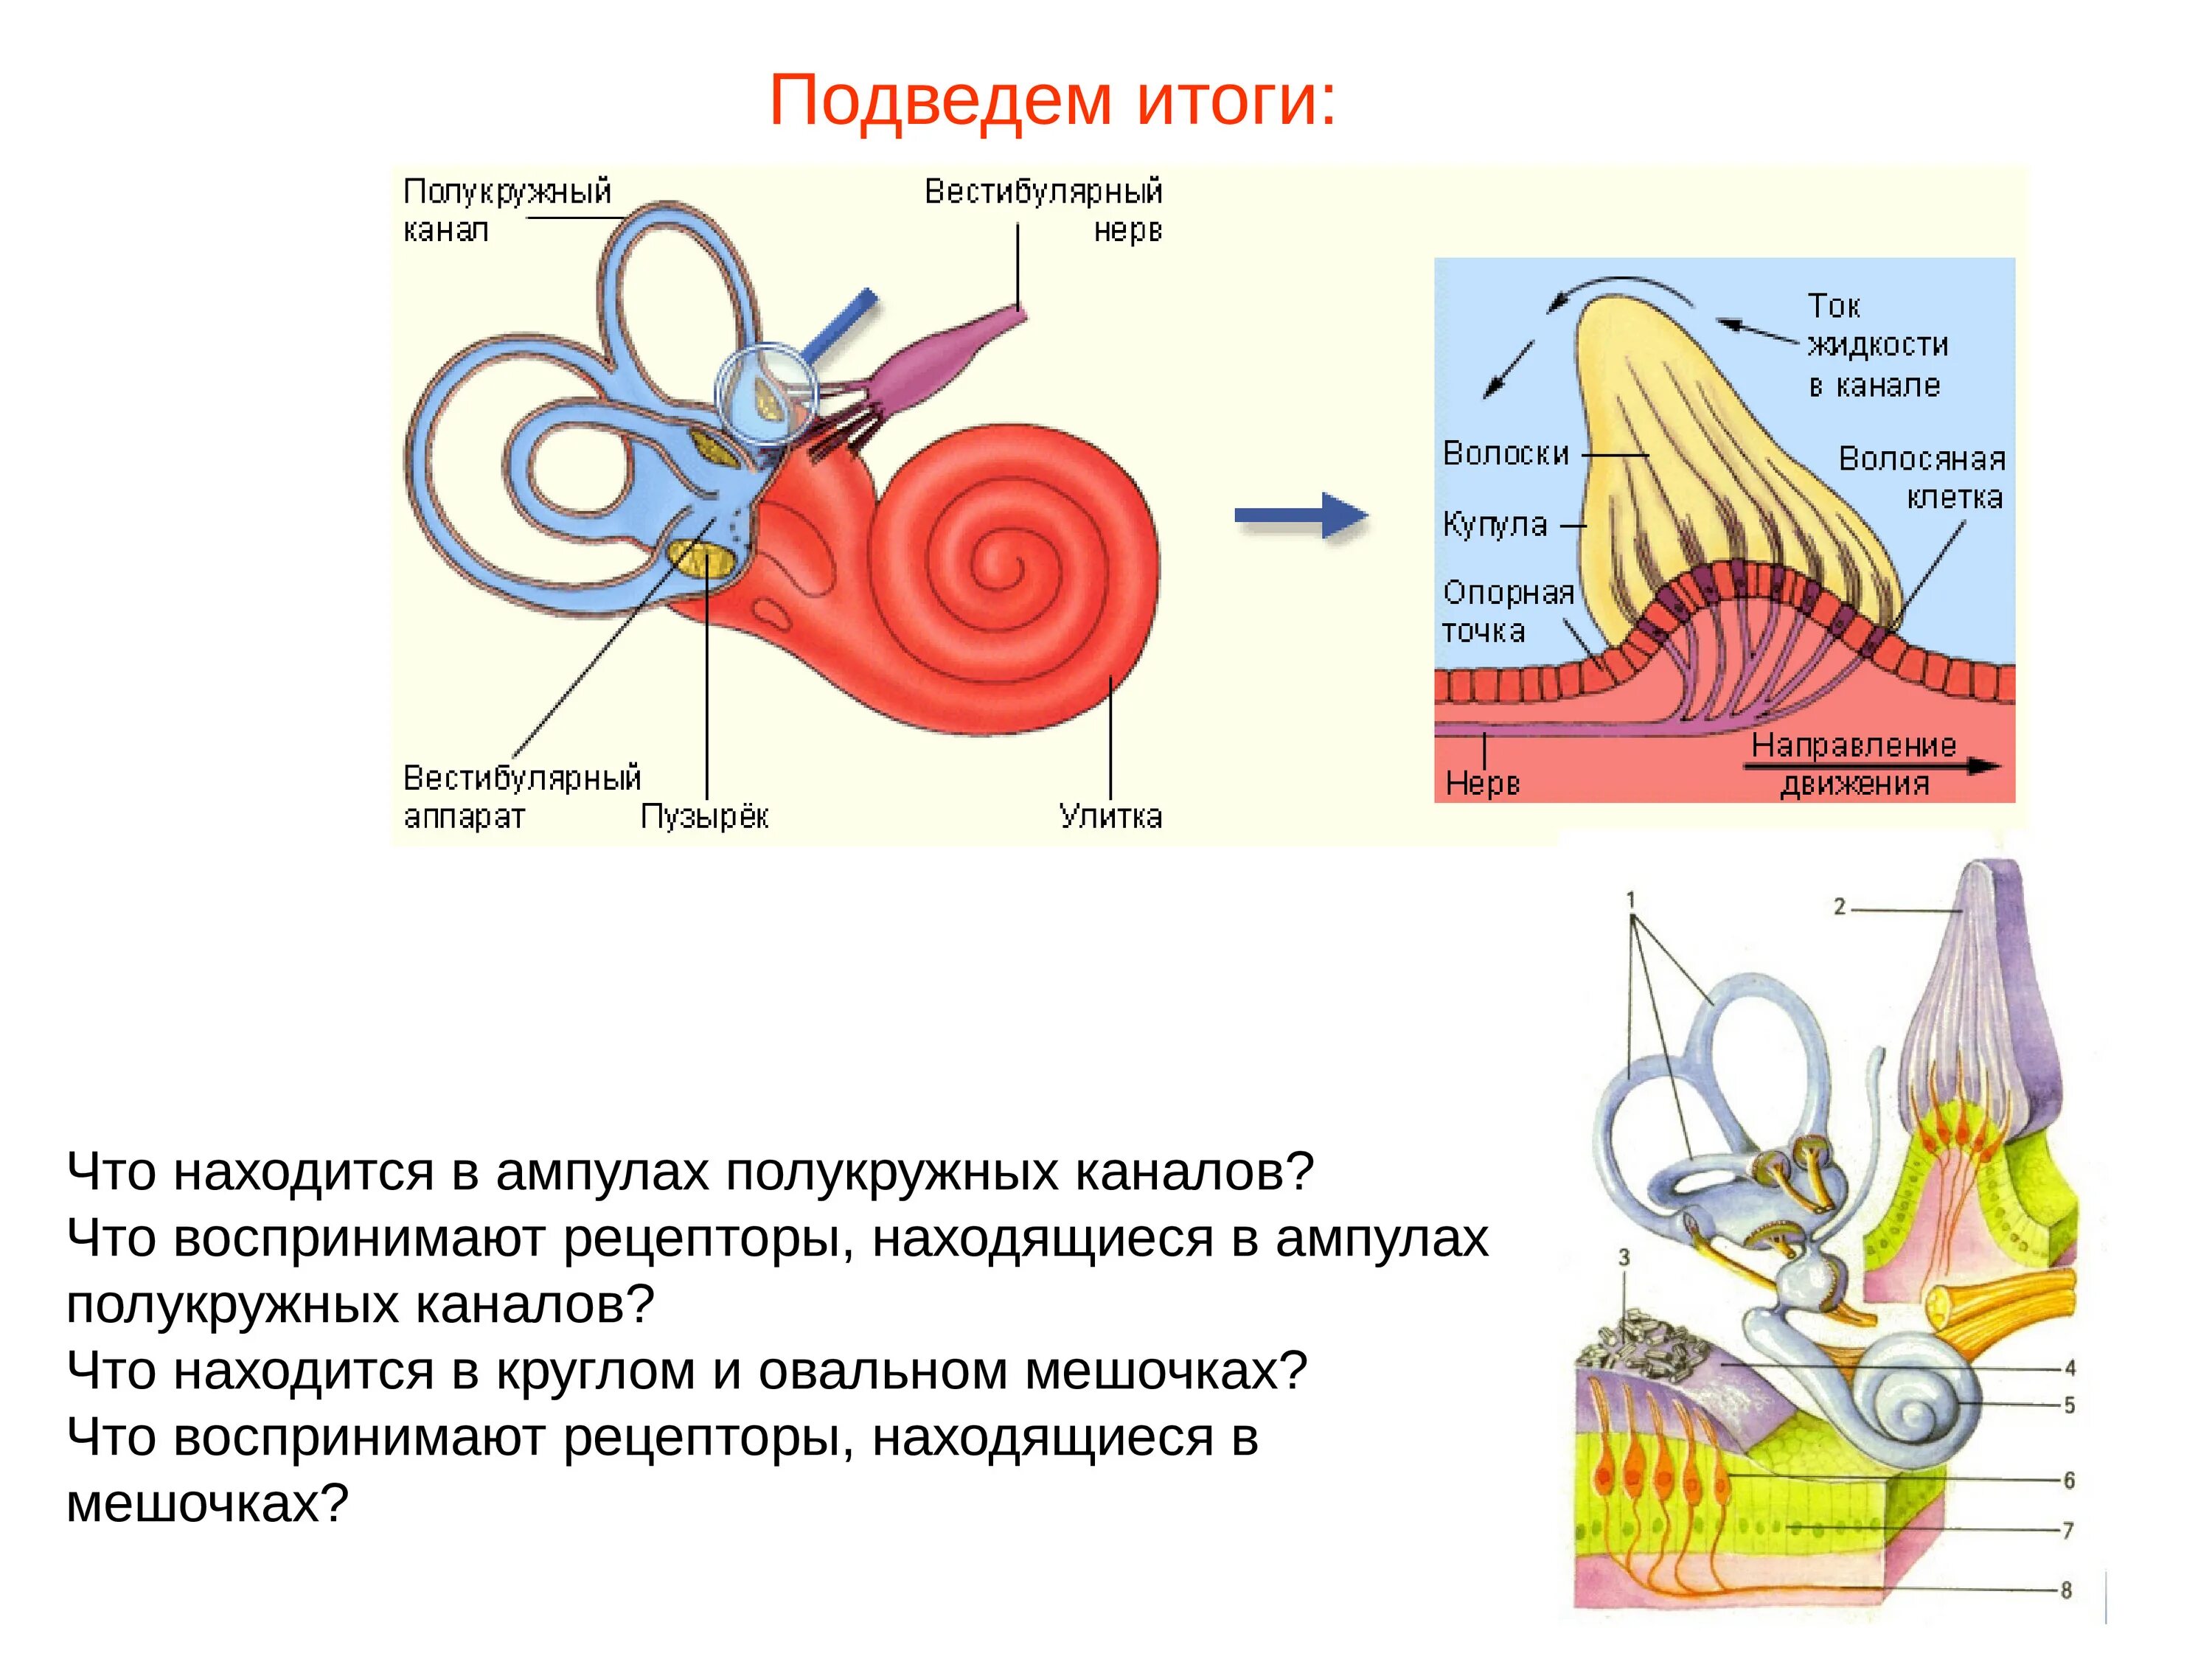 Рецепторы ампул полукружных каналов. Рецепторы внутреннего уха вестибулярного аппарата. Рецепторы вестибулярного анализатора. Рецепторы полукружных каналов реагируют на. Рецепторный орган слуха